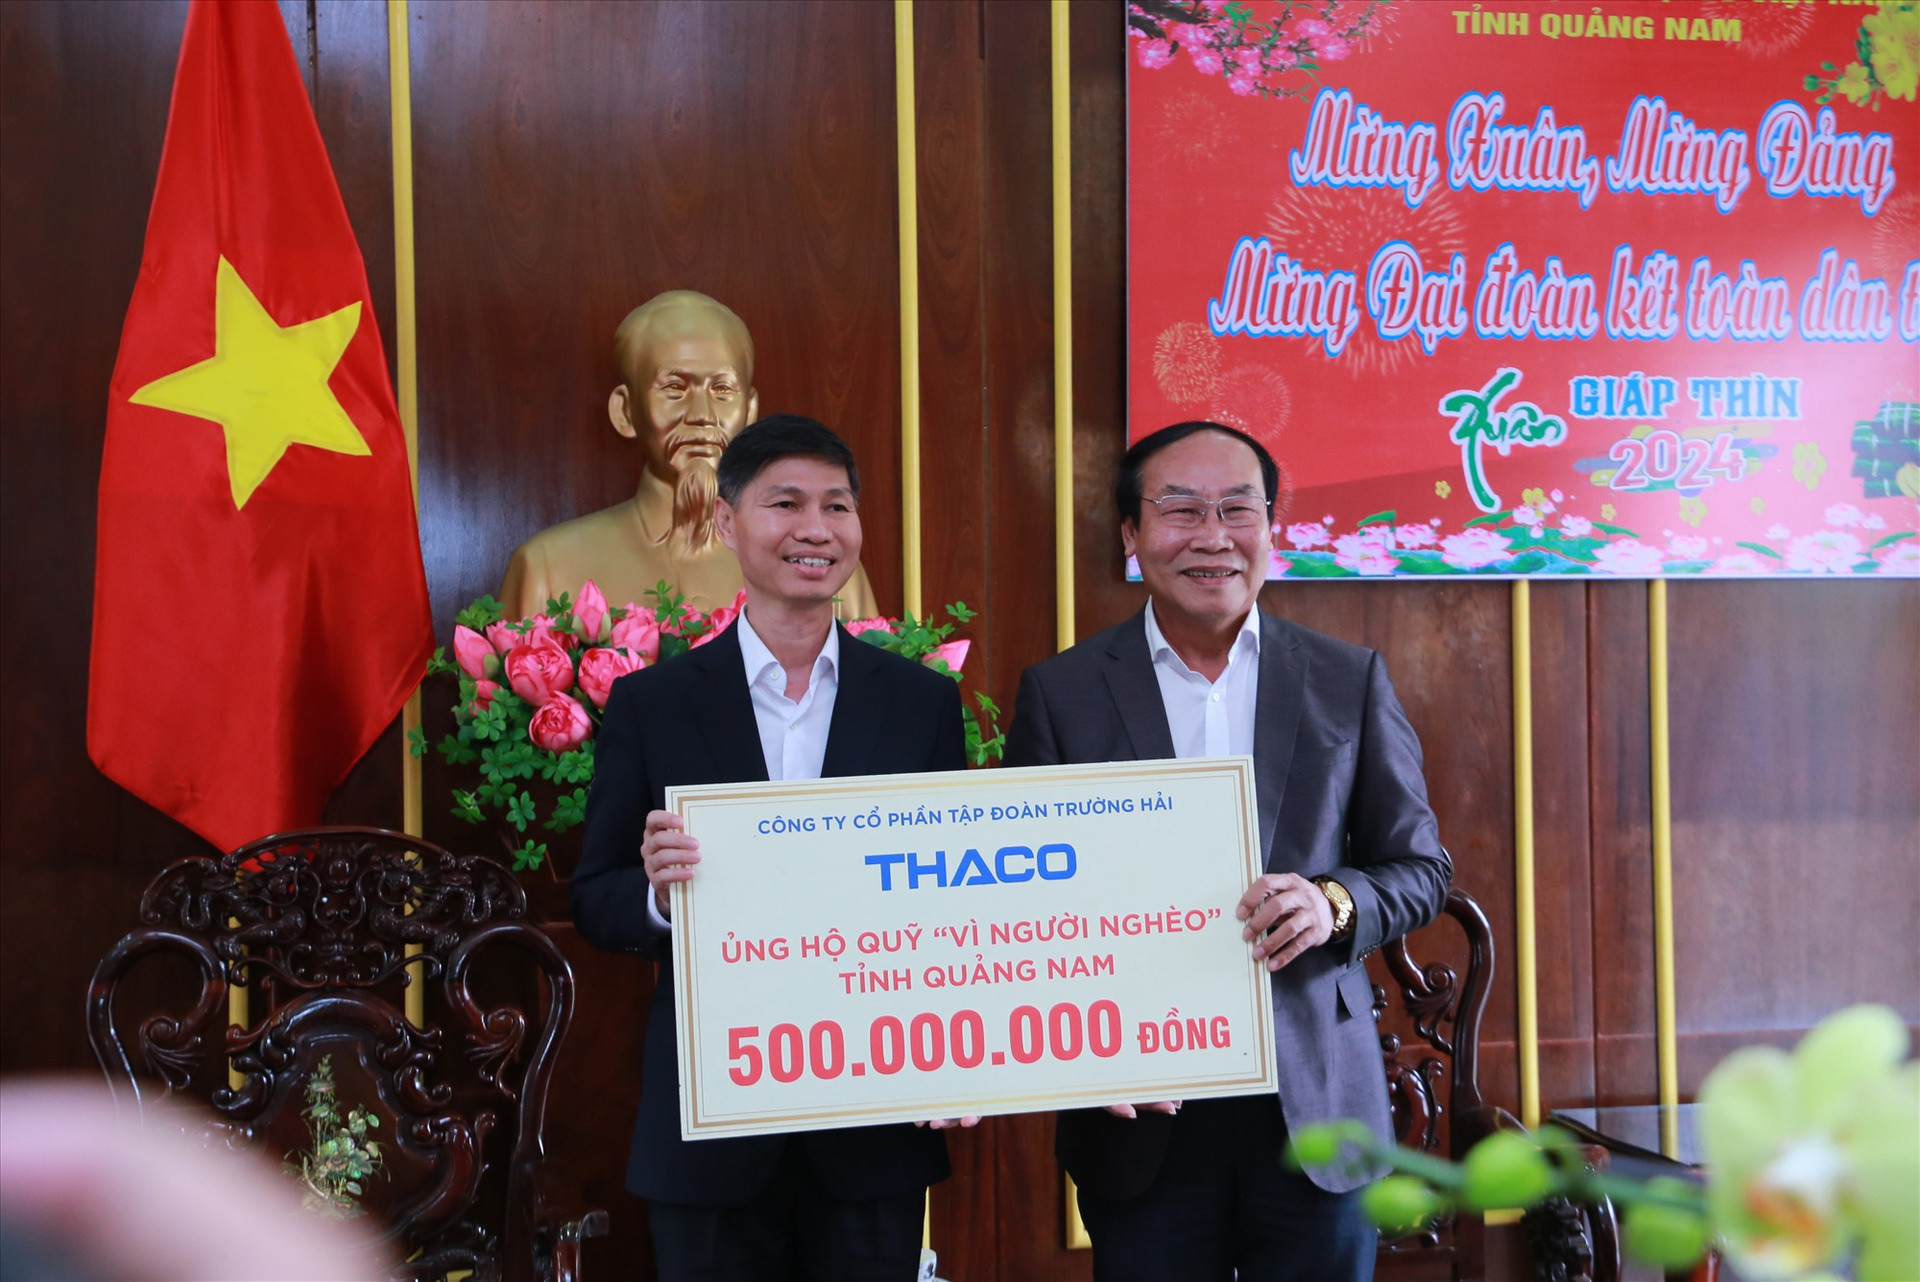 Ông Võ Xuân Ca tiếp nhận 500 triệu đồng ủng hộ quỹ Vì người nghèo tỉnh Quảng Nam từ đại diện THACO.